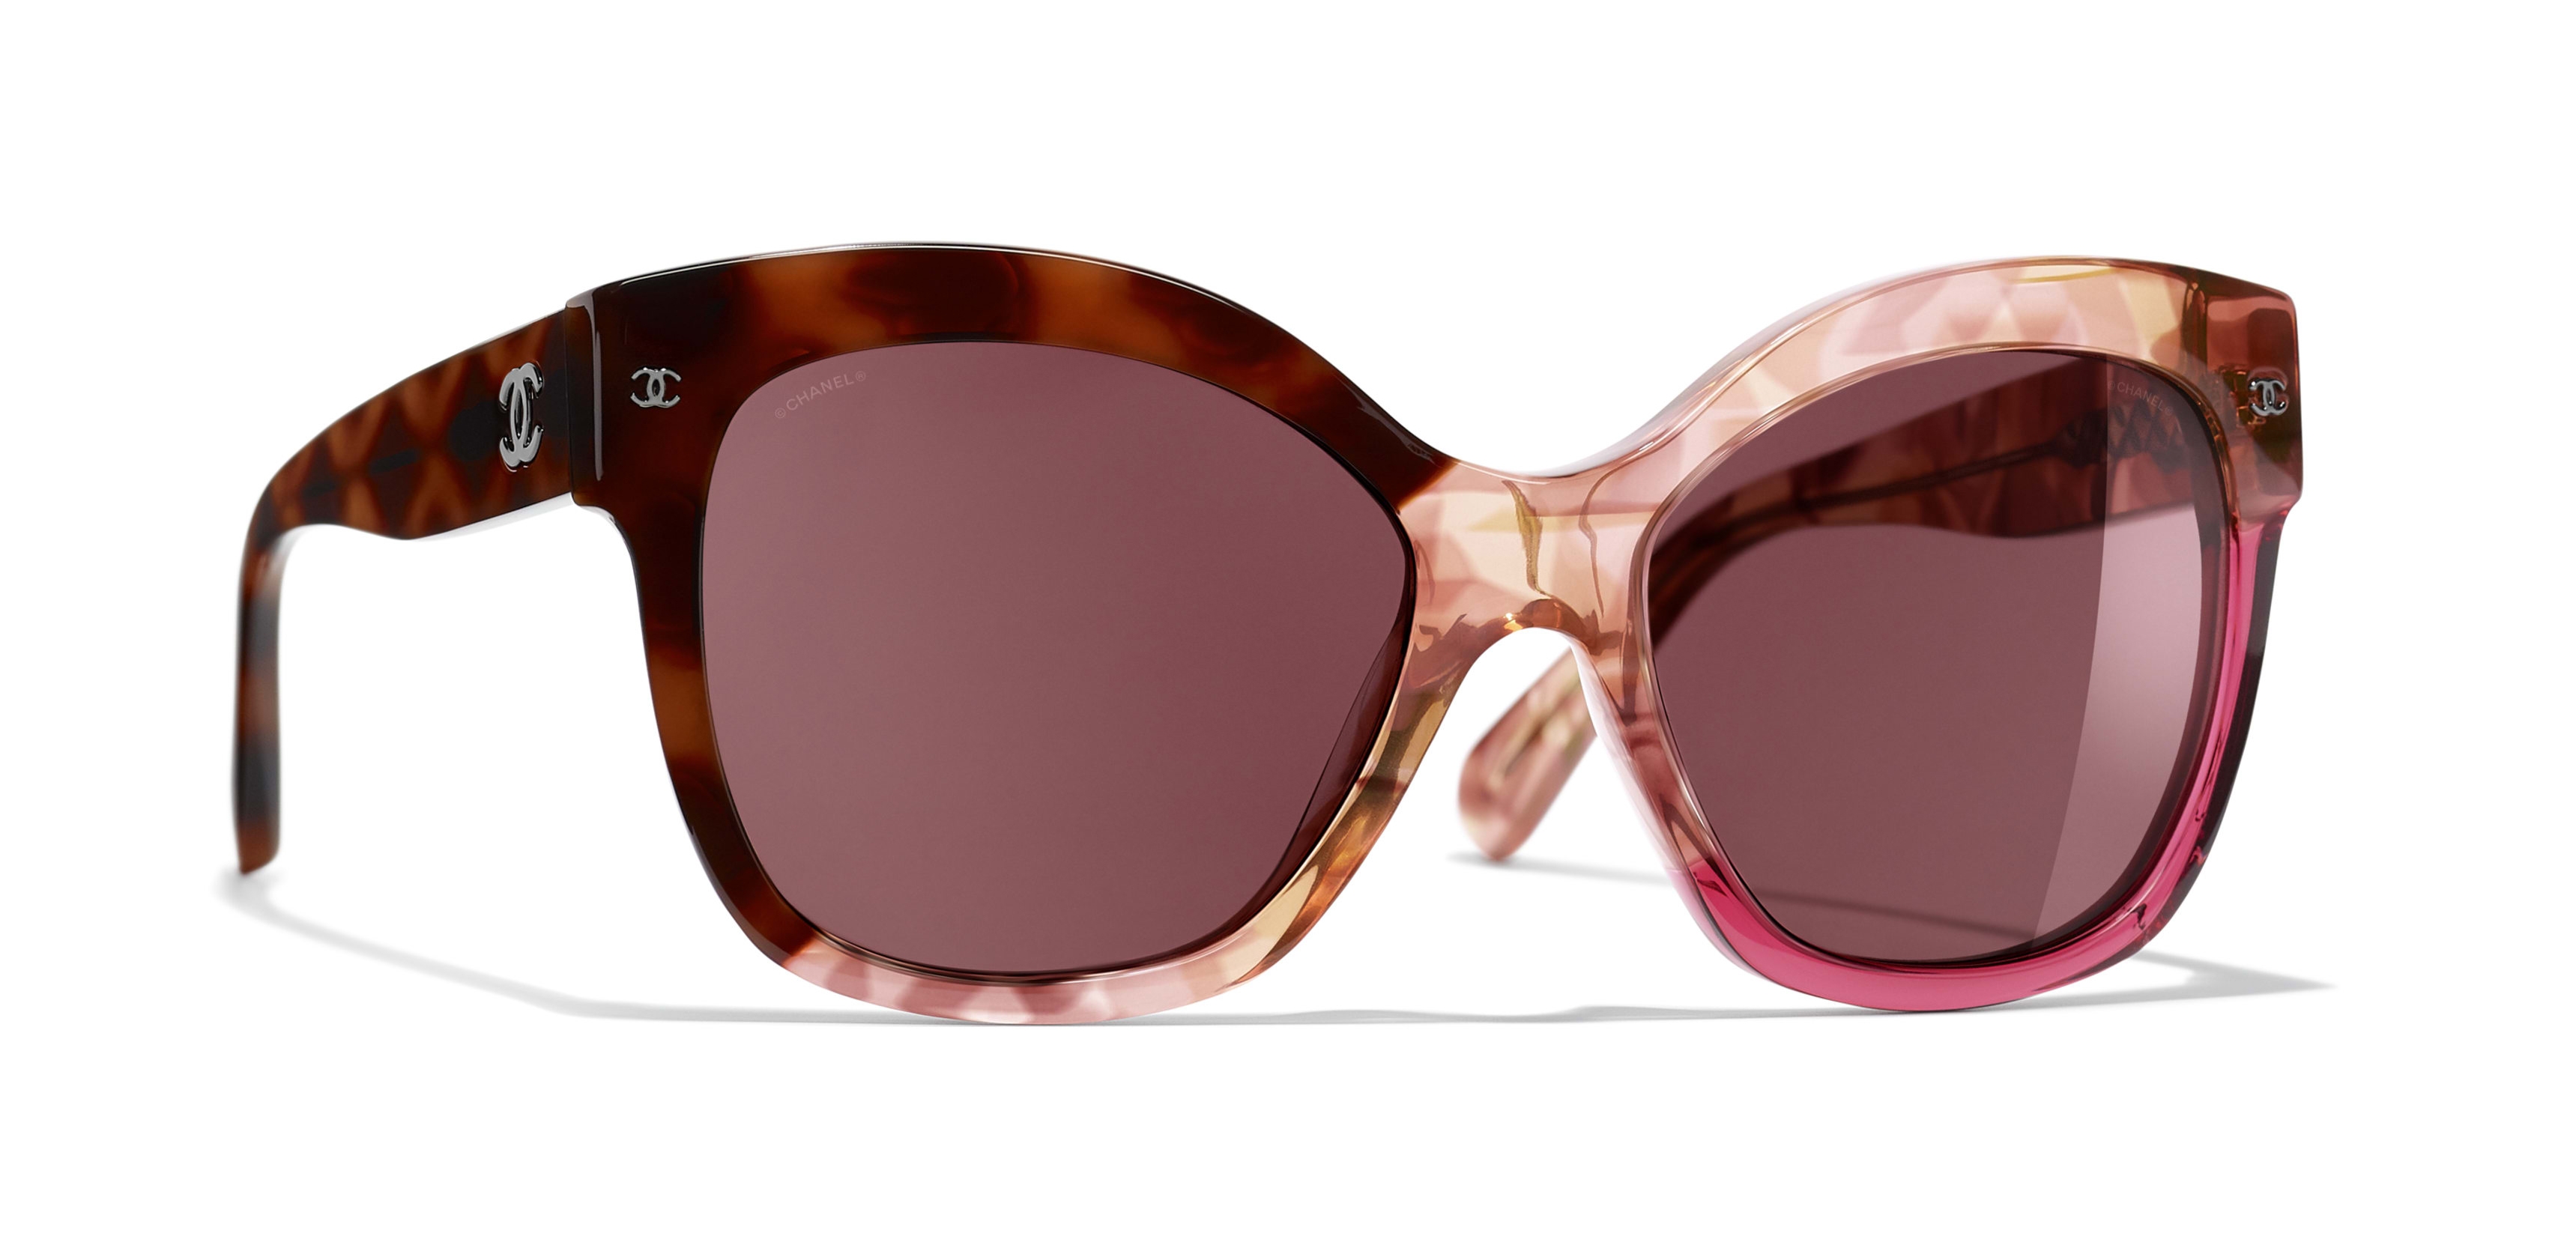 Chanel - Butterfly Sunglasses - Dark Tortoise Pink - Chanel Eyewear -  Avvenice